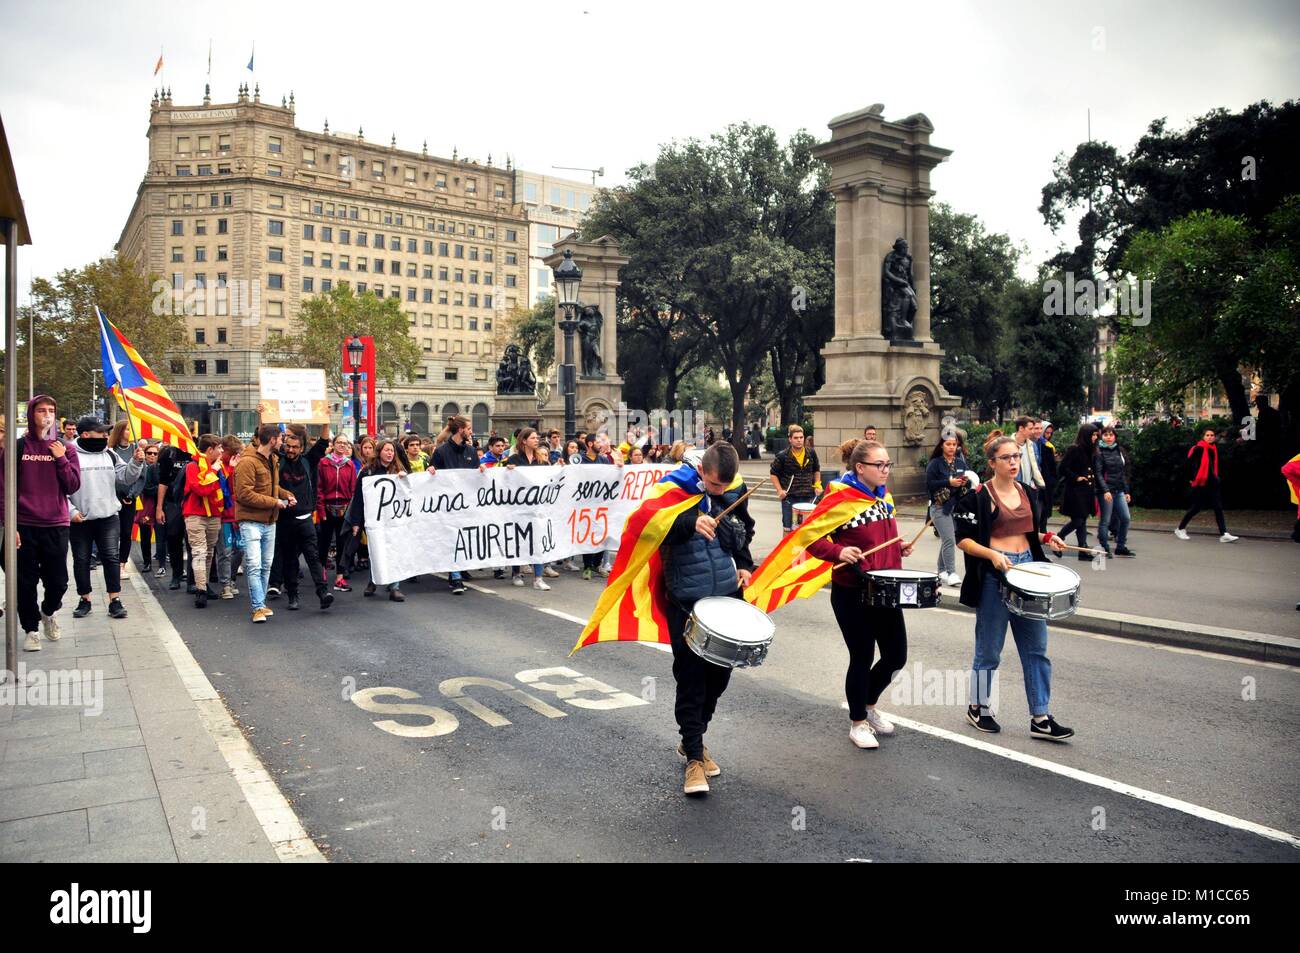 Barcelone, Catalogne, Espagne. Nov 8, 2017. Les jeunes catalans de protestation contre le gouvernement espagnol au milieu des rues de Barcelone. Ils portent le drapeau indépendantiste, le ''estelada'', et une réclamation de l'éducation catalan gratuitement du gouvernement central (Article 155) menaçant la culture locale. Crédit : Laura Calonge/SOPA/ZUMA/Alamy Fil Live News Banque D'Images